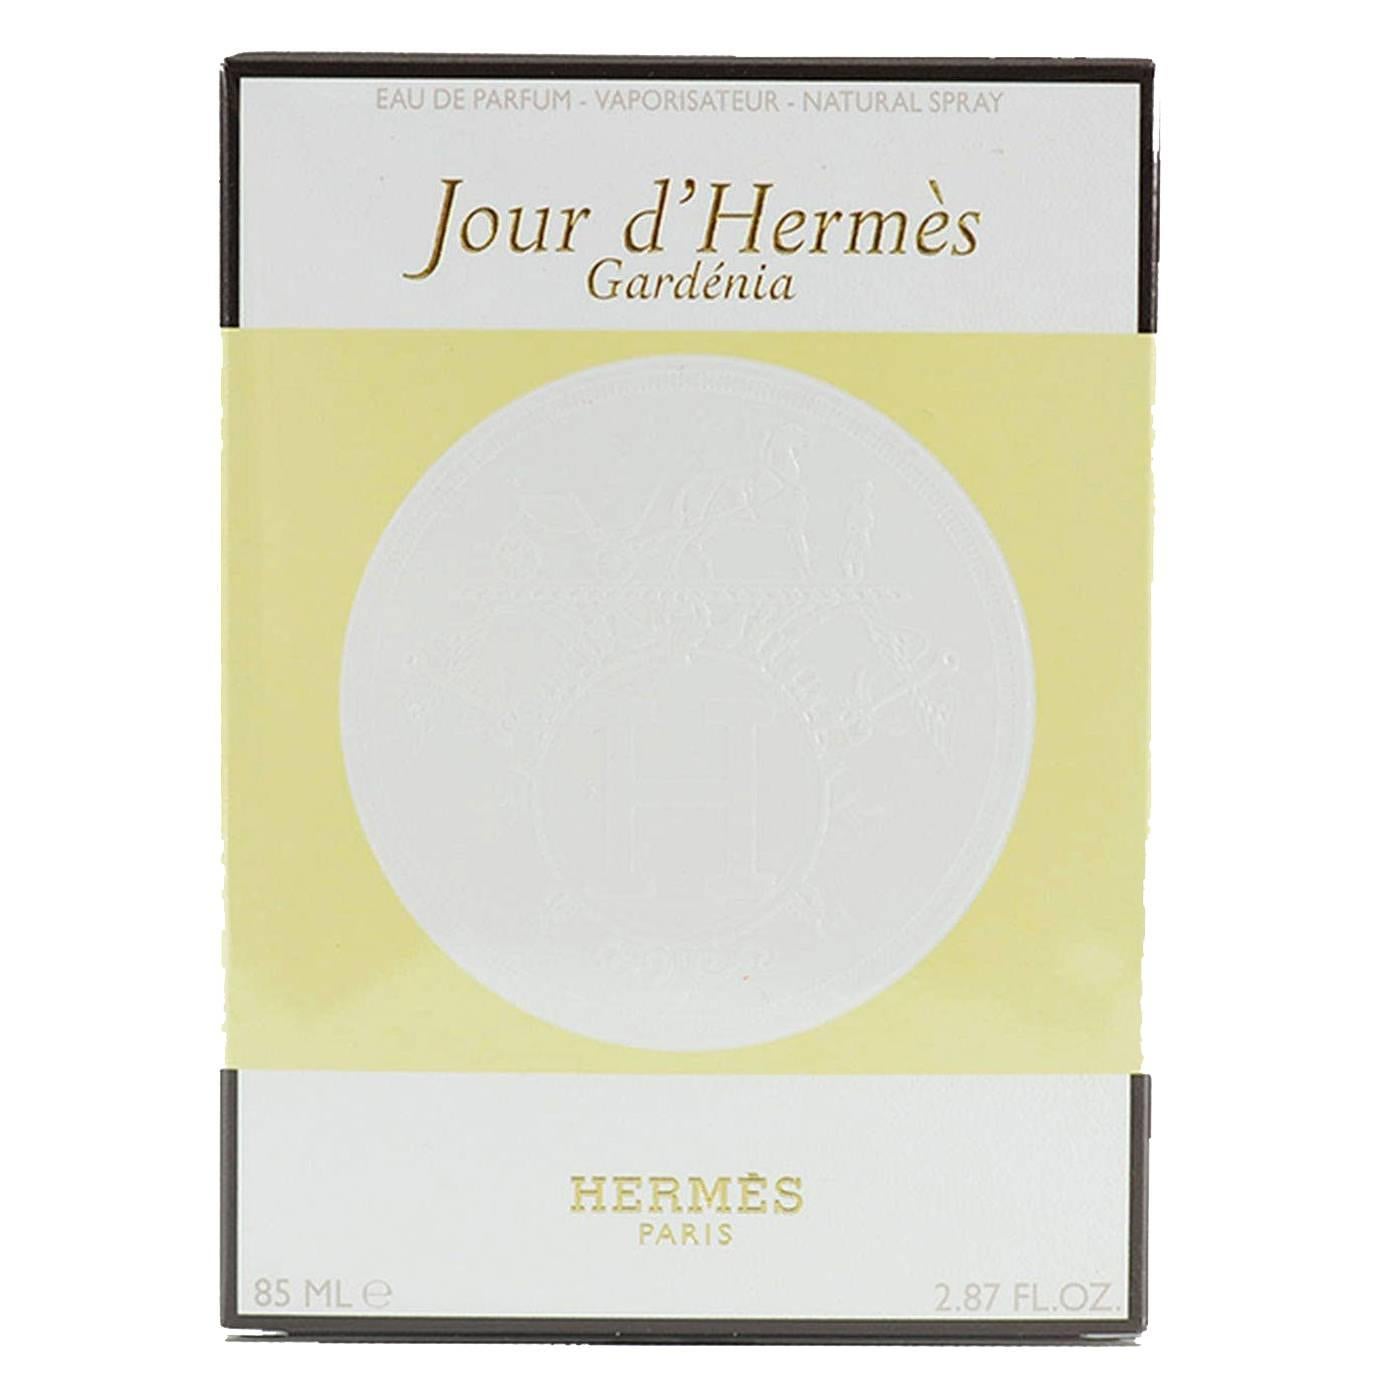 Hermes "Jour d´Hermes" Eau de parfum Vaporisateur Natural Spray Gardenia 85 ML For Sale